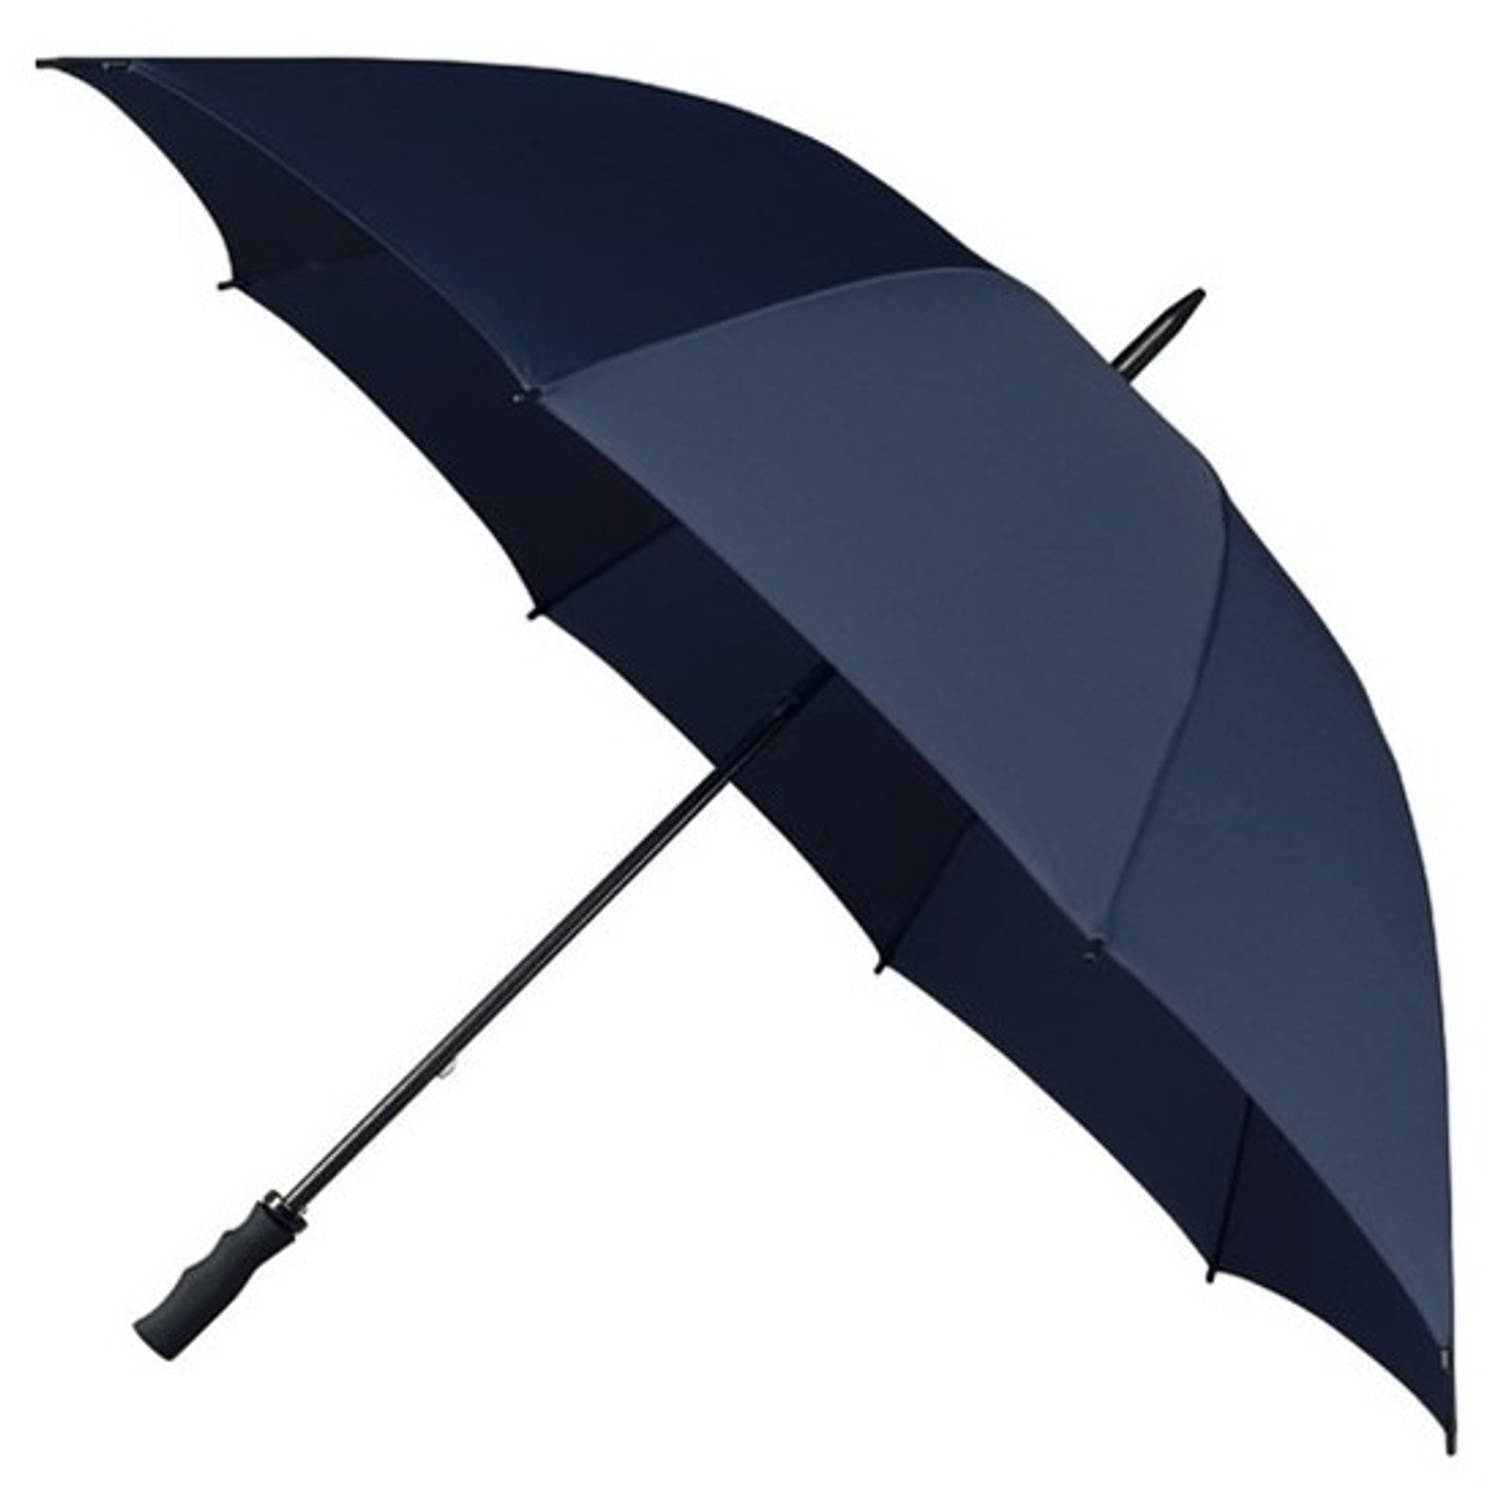 Stormparaplu navy/marine blauw 130 cm - Paraplu's